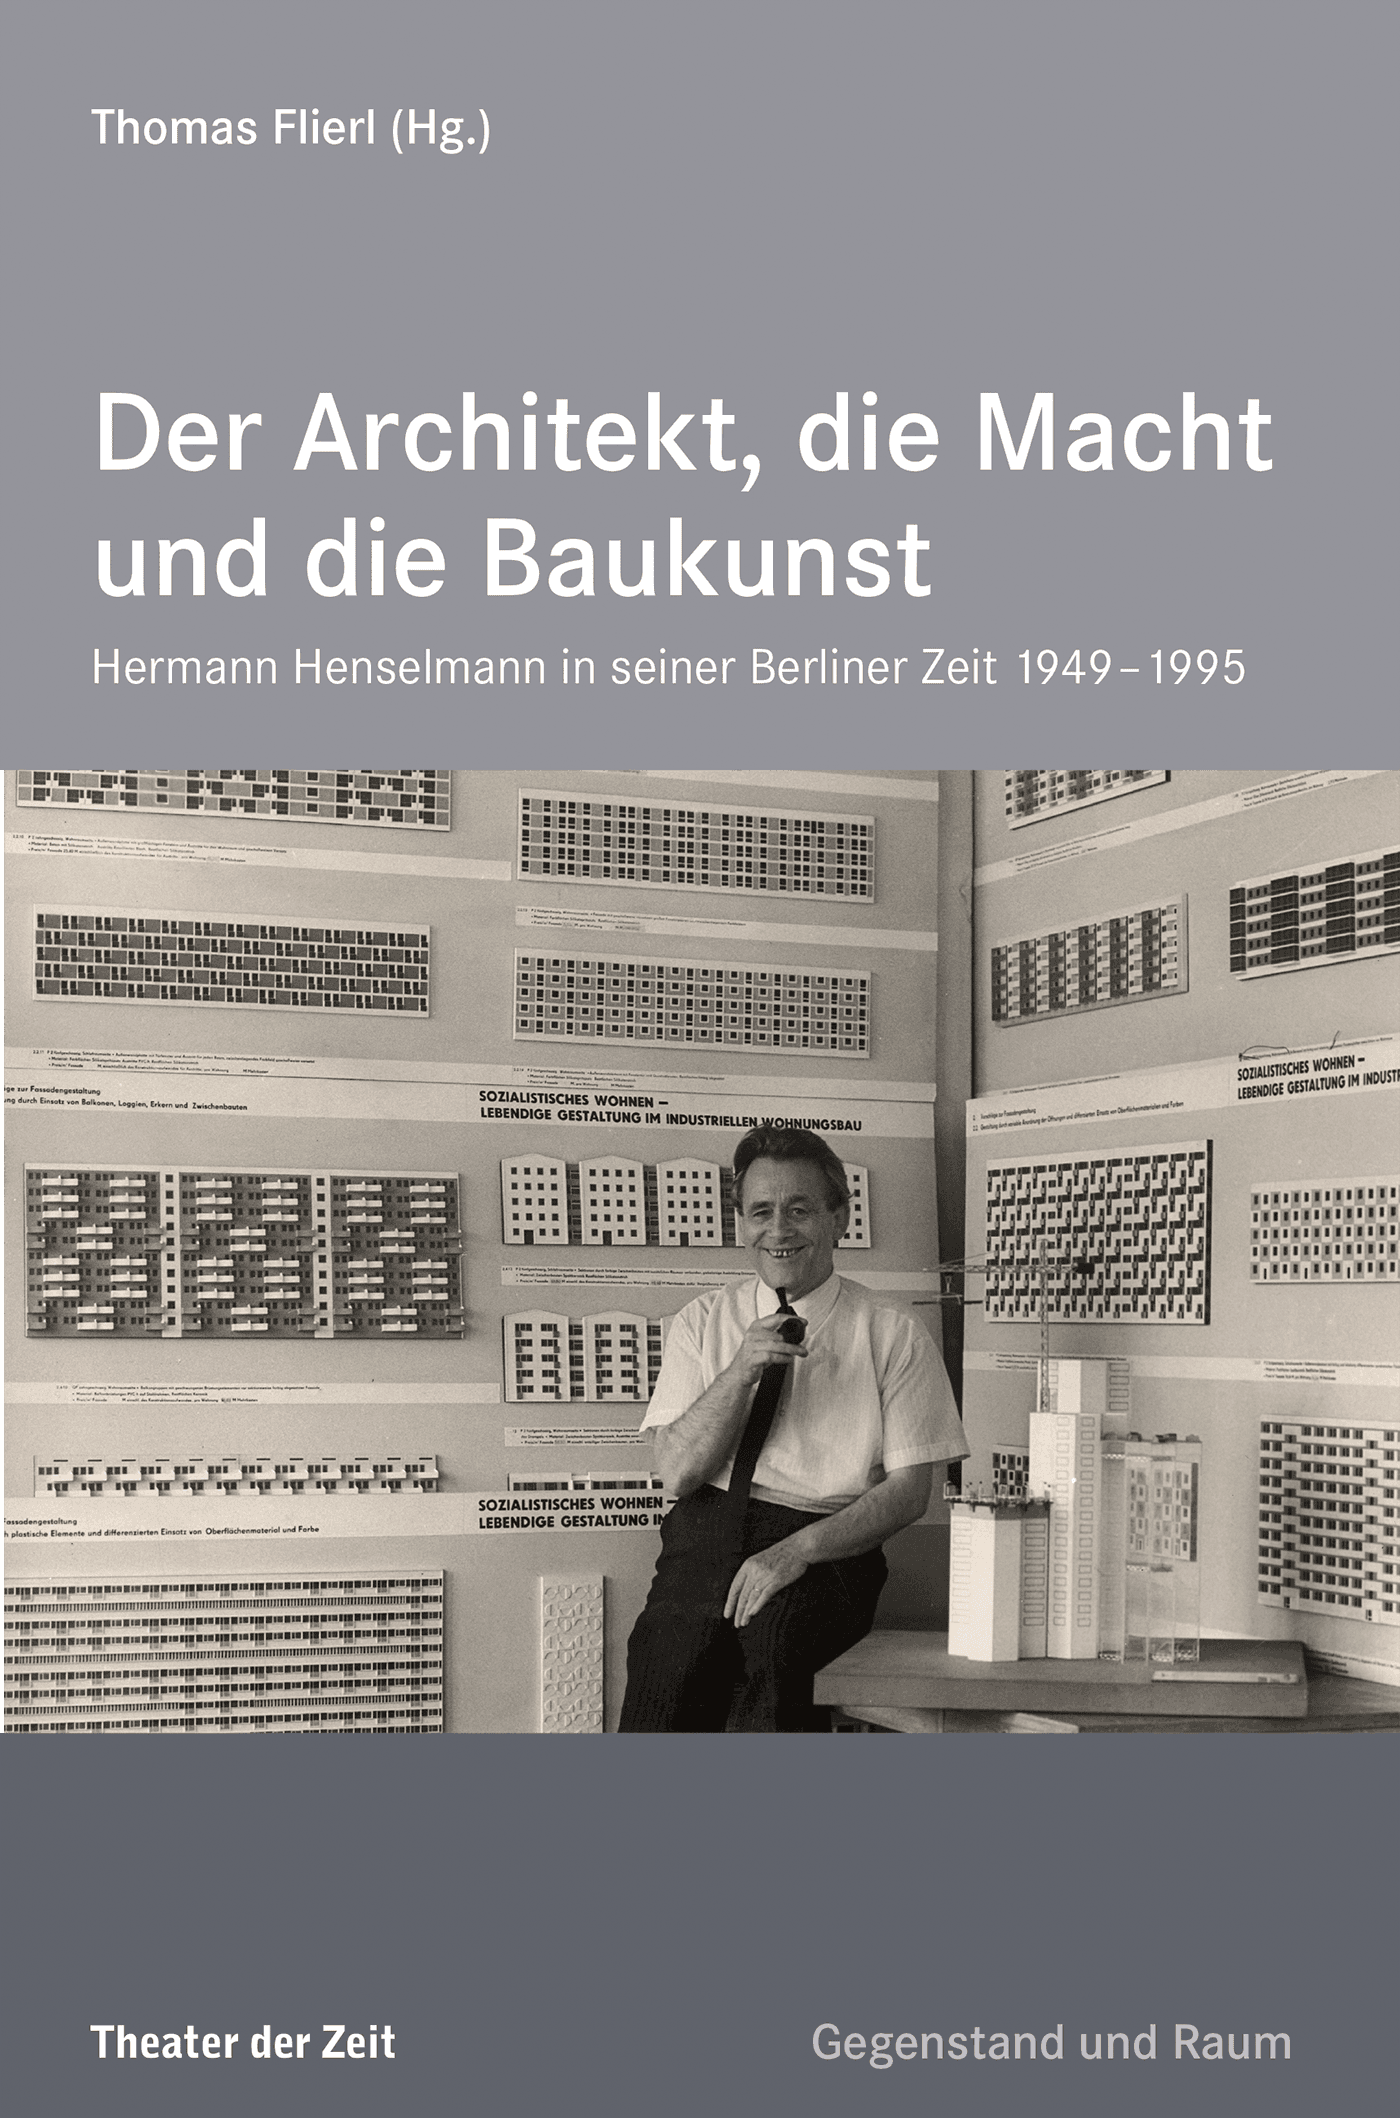 Edition Gegenstand und Raum "Der Architekt, die Macht und die Baukunst"